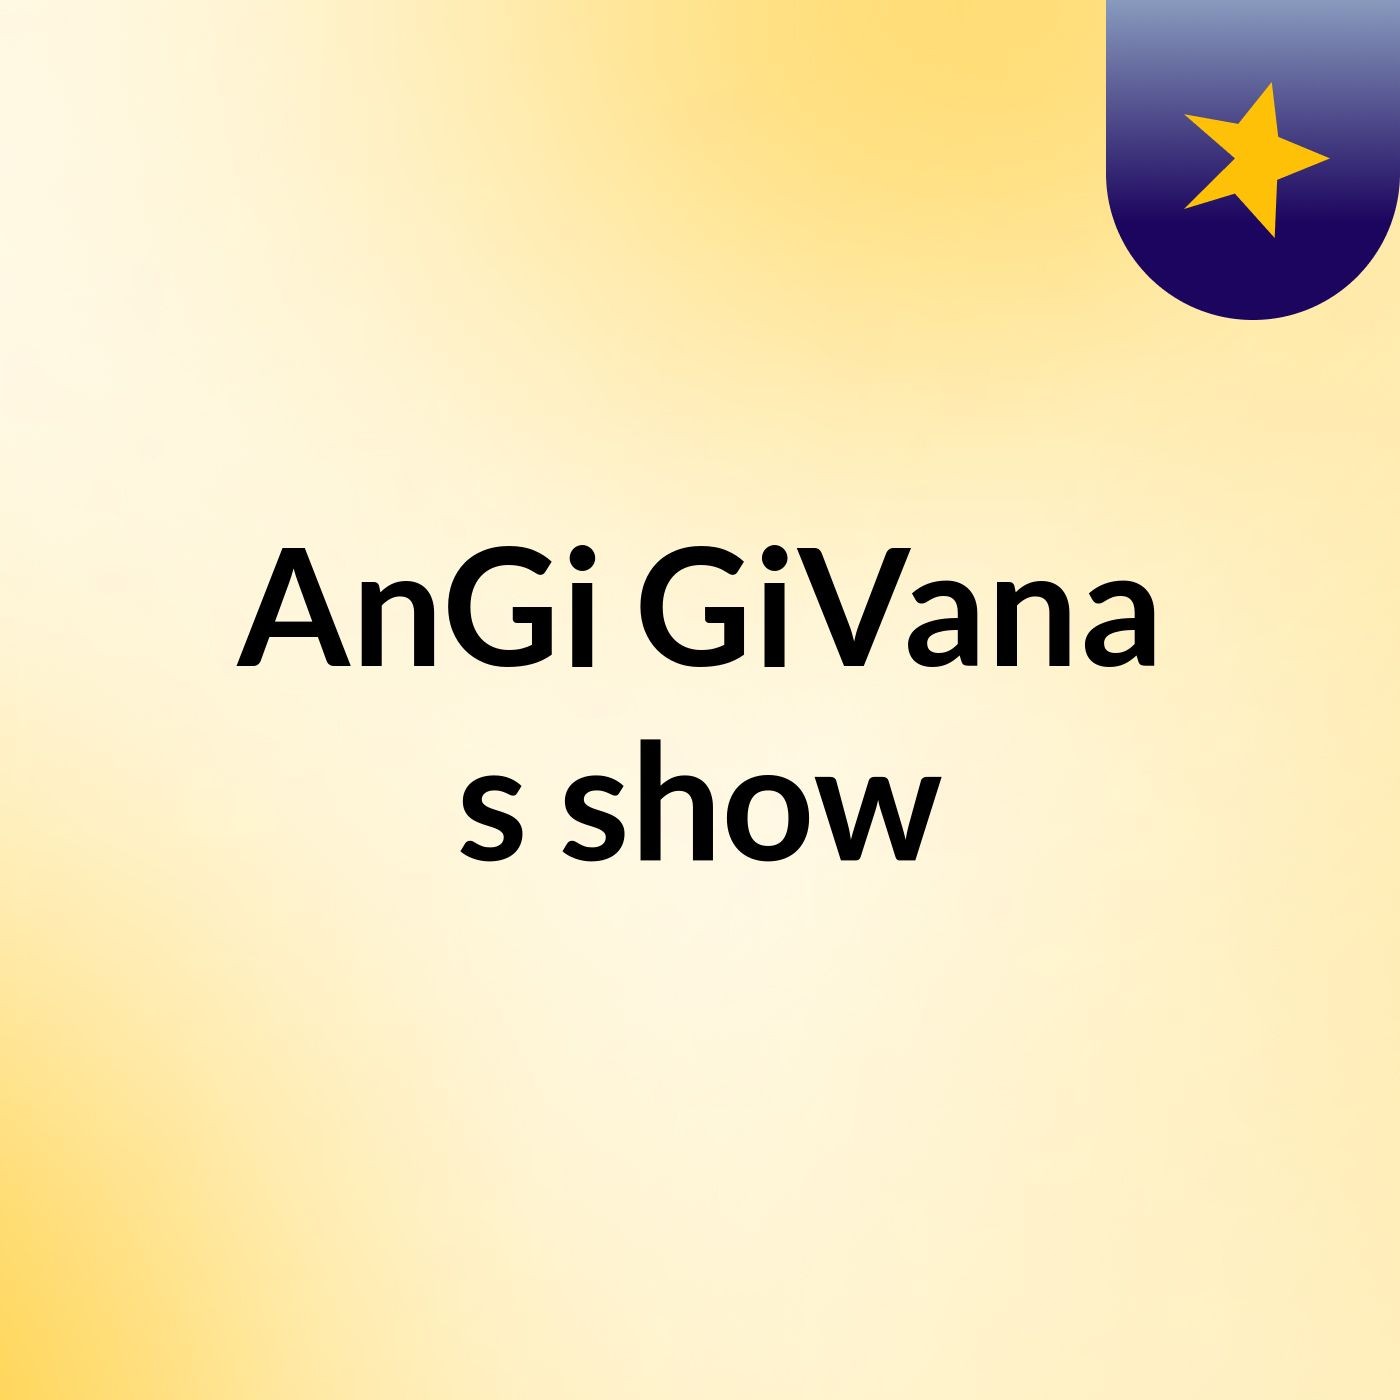 AnGi GiVana's show